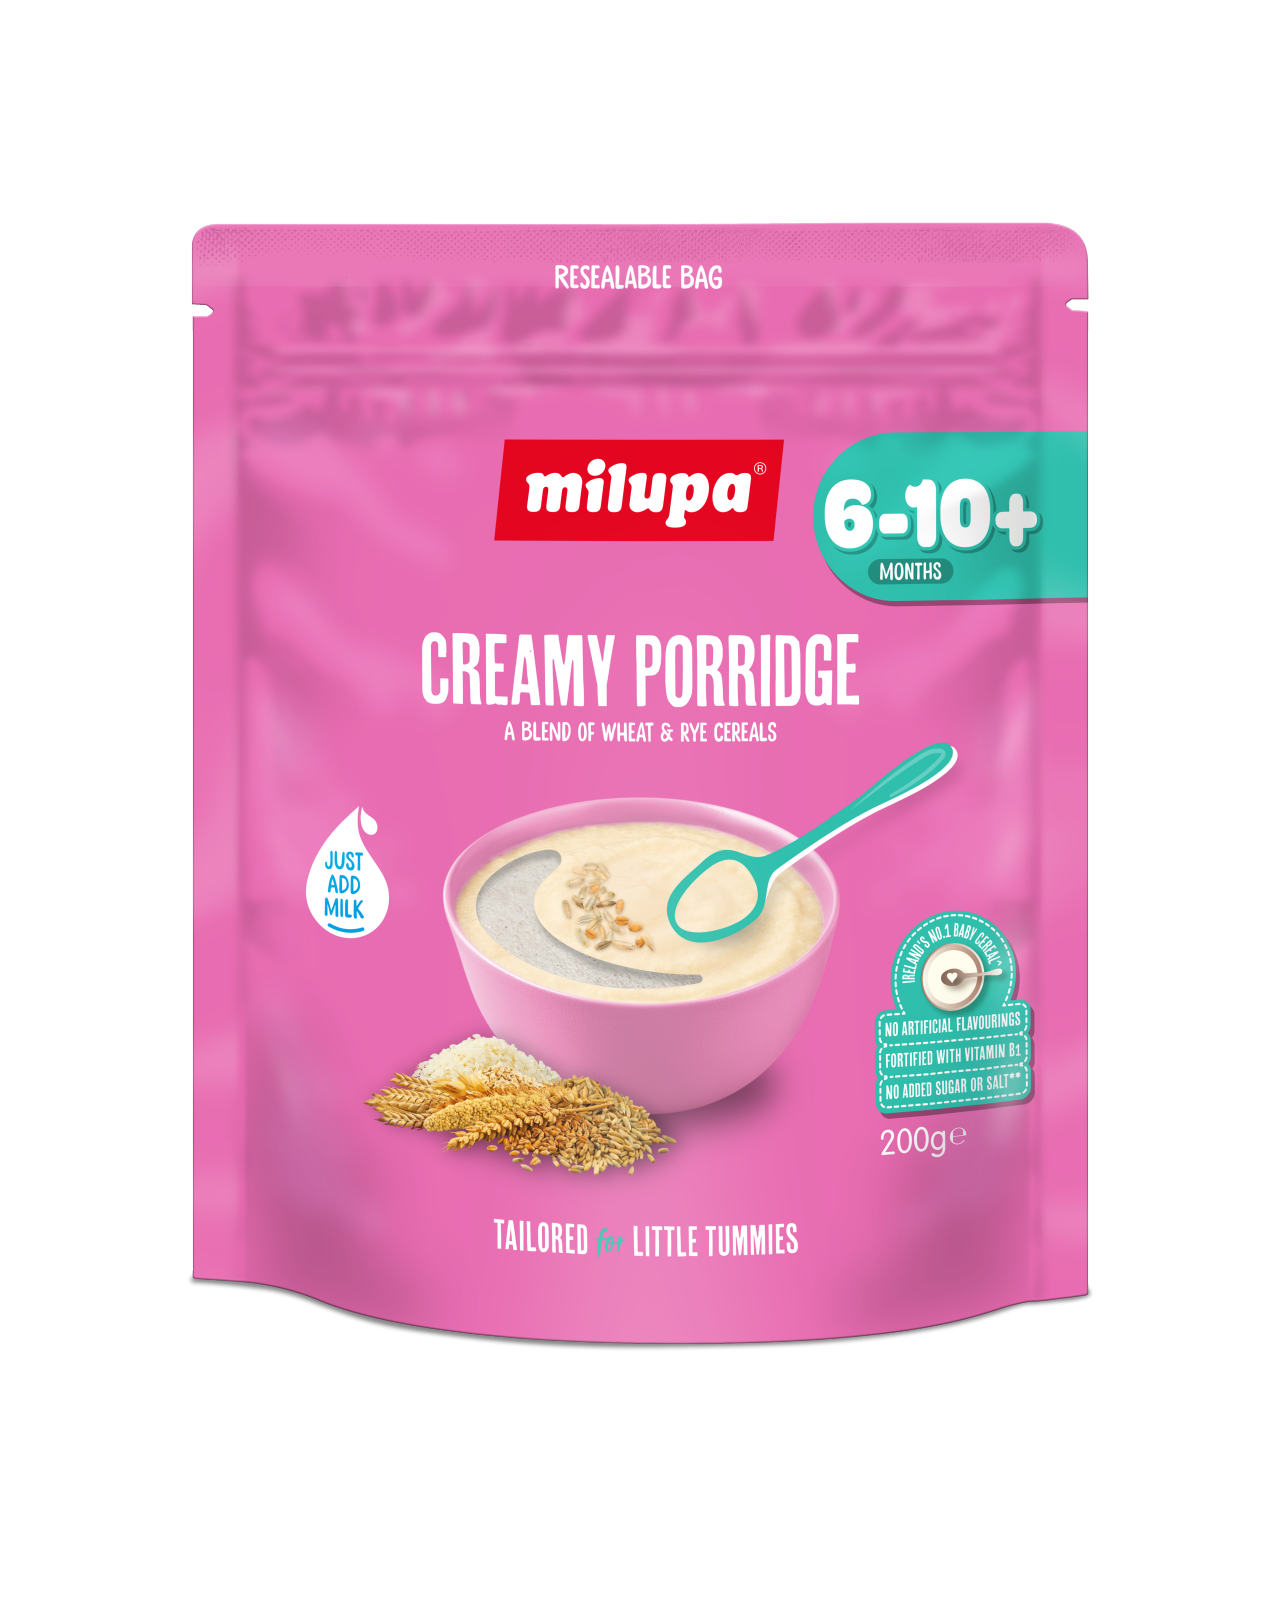 Creamy Porridge image